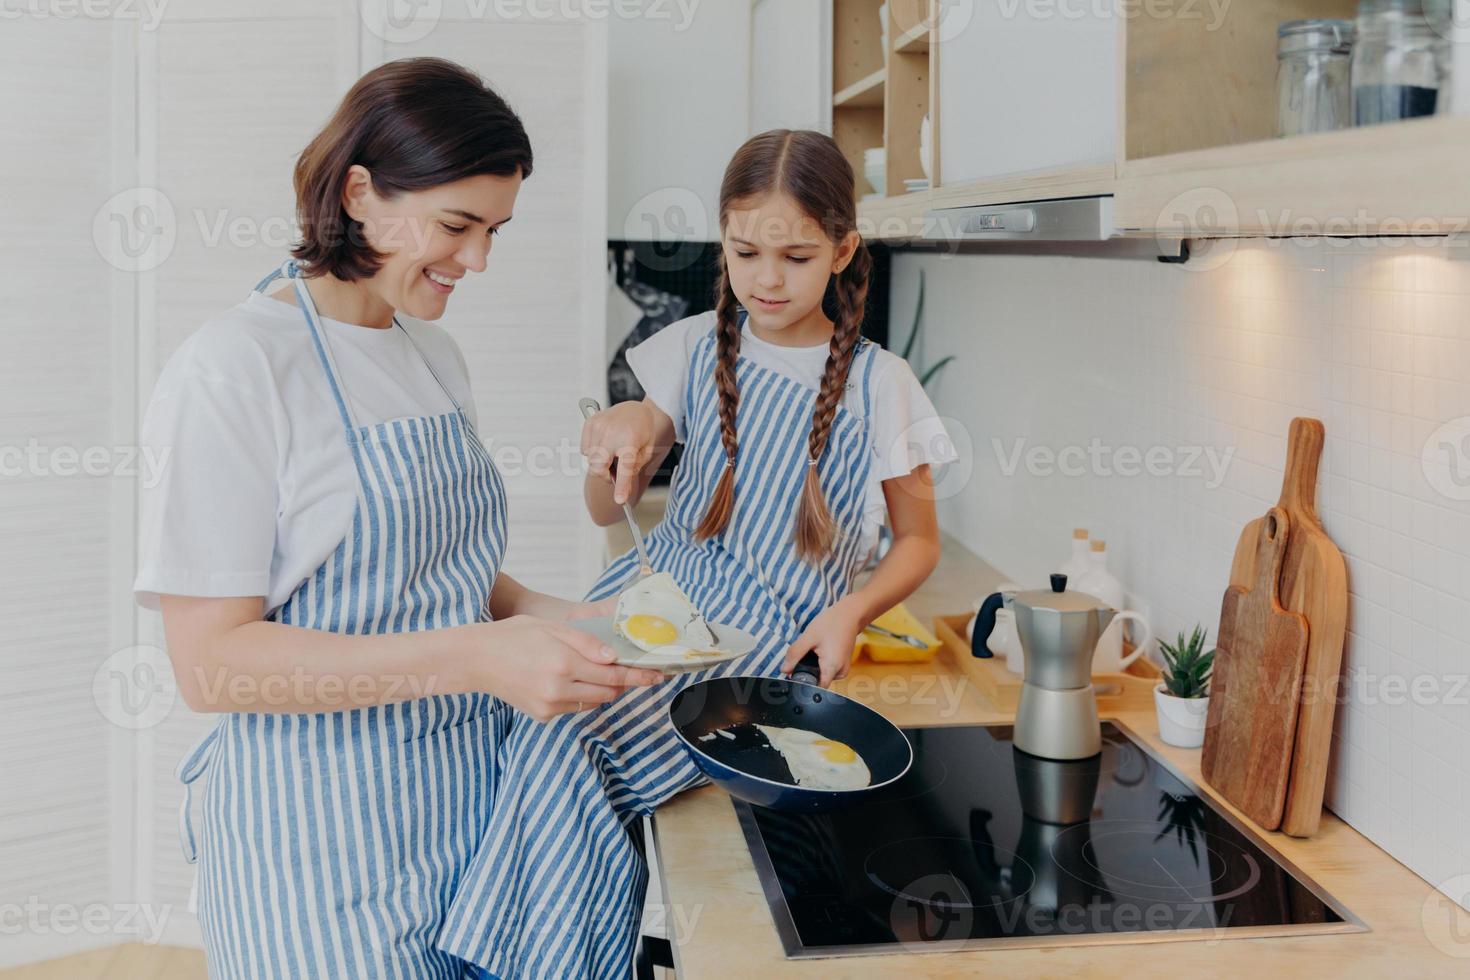 foto di una mamma allegra e impegnata e sua figlia posano vicino ai fornelli, servono la colazione per la famiglia, friggono le uova sulla padella, indossano grembiuli, posano nella cucina domestica. la madre insegna al bambino come preparare facilmente il pasto